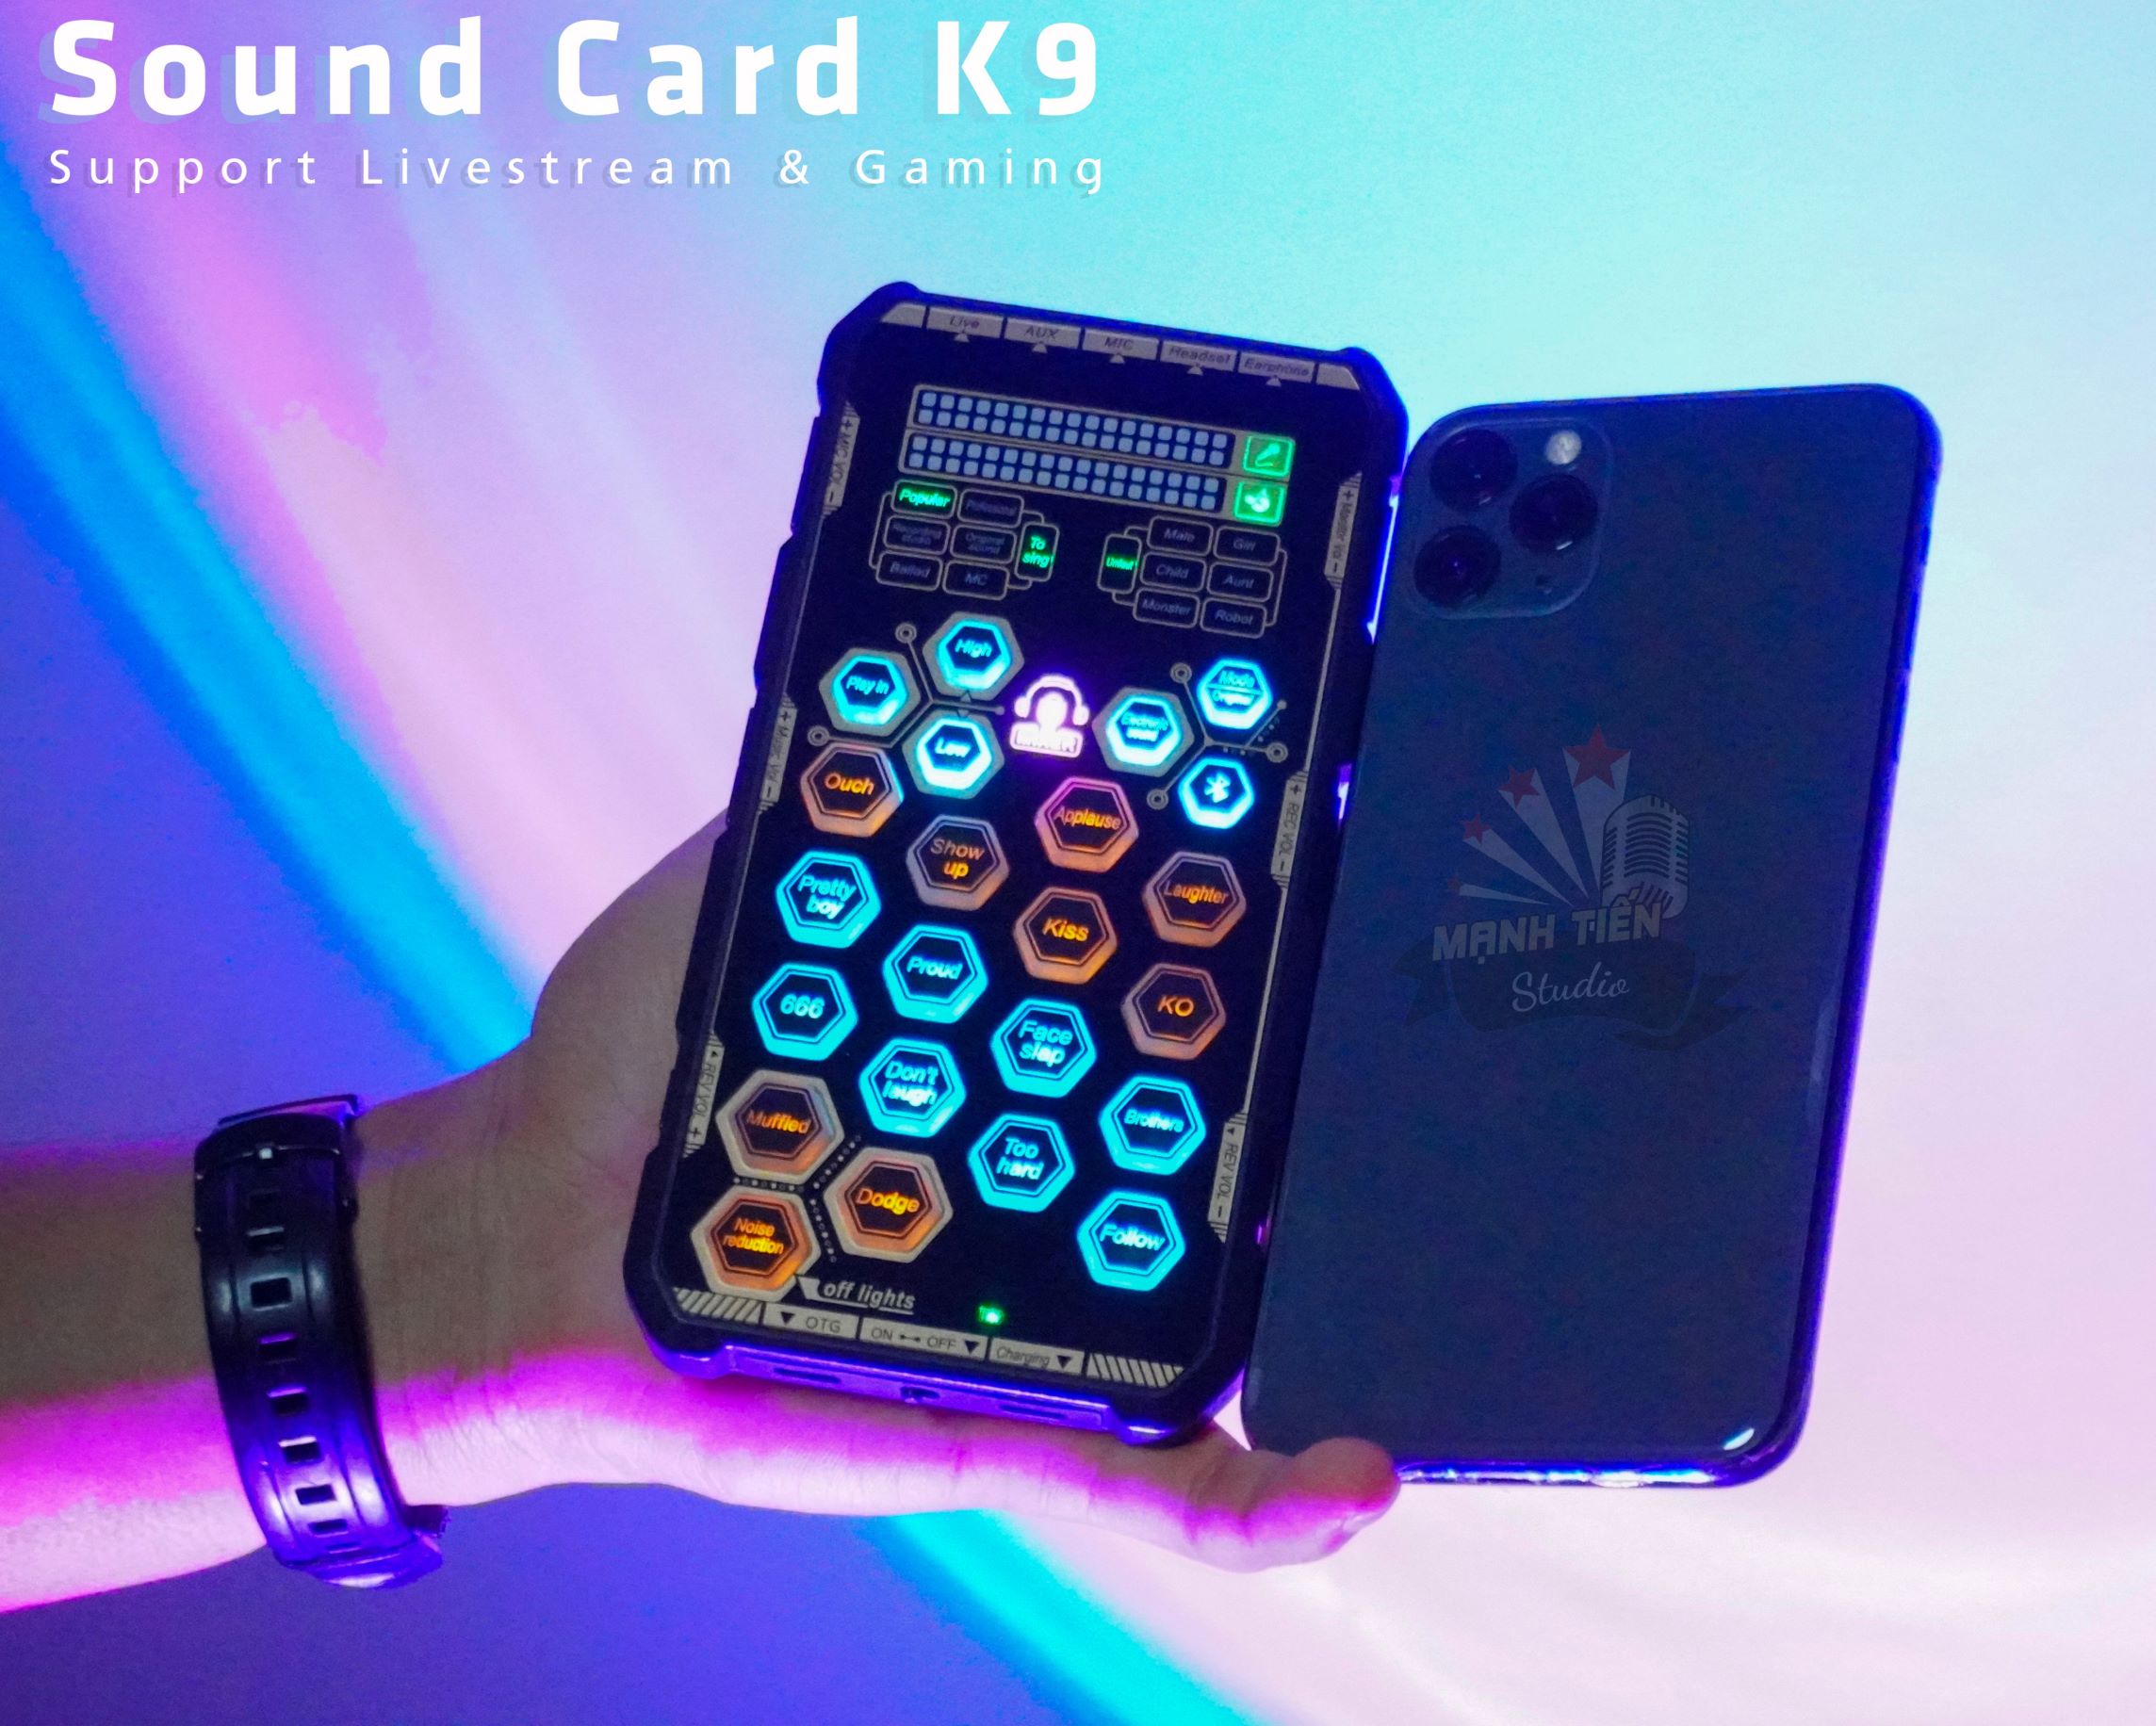 Sound card K9 mobile - Chơi game, thu âm, livestream, karaoke online, pk chỉ cần thêm tai nghe - Hỗ trợ autotune đổi giọng, hiệu ứng vui nhộn - Bluetooth 5.0, giảm tiếng ồn, trang bị pin sạc - Kết nối dễ dàng với smartphone, máy tính, tablet... 2